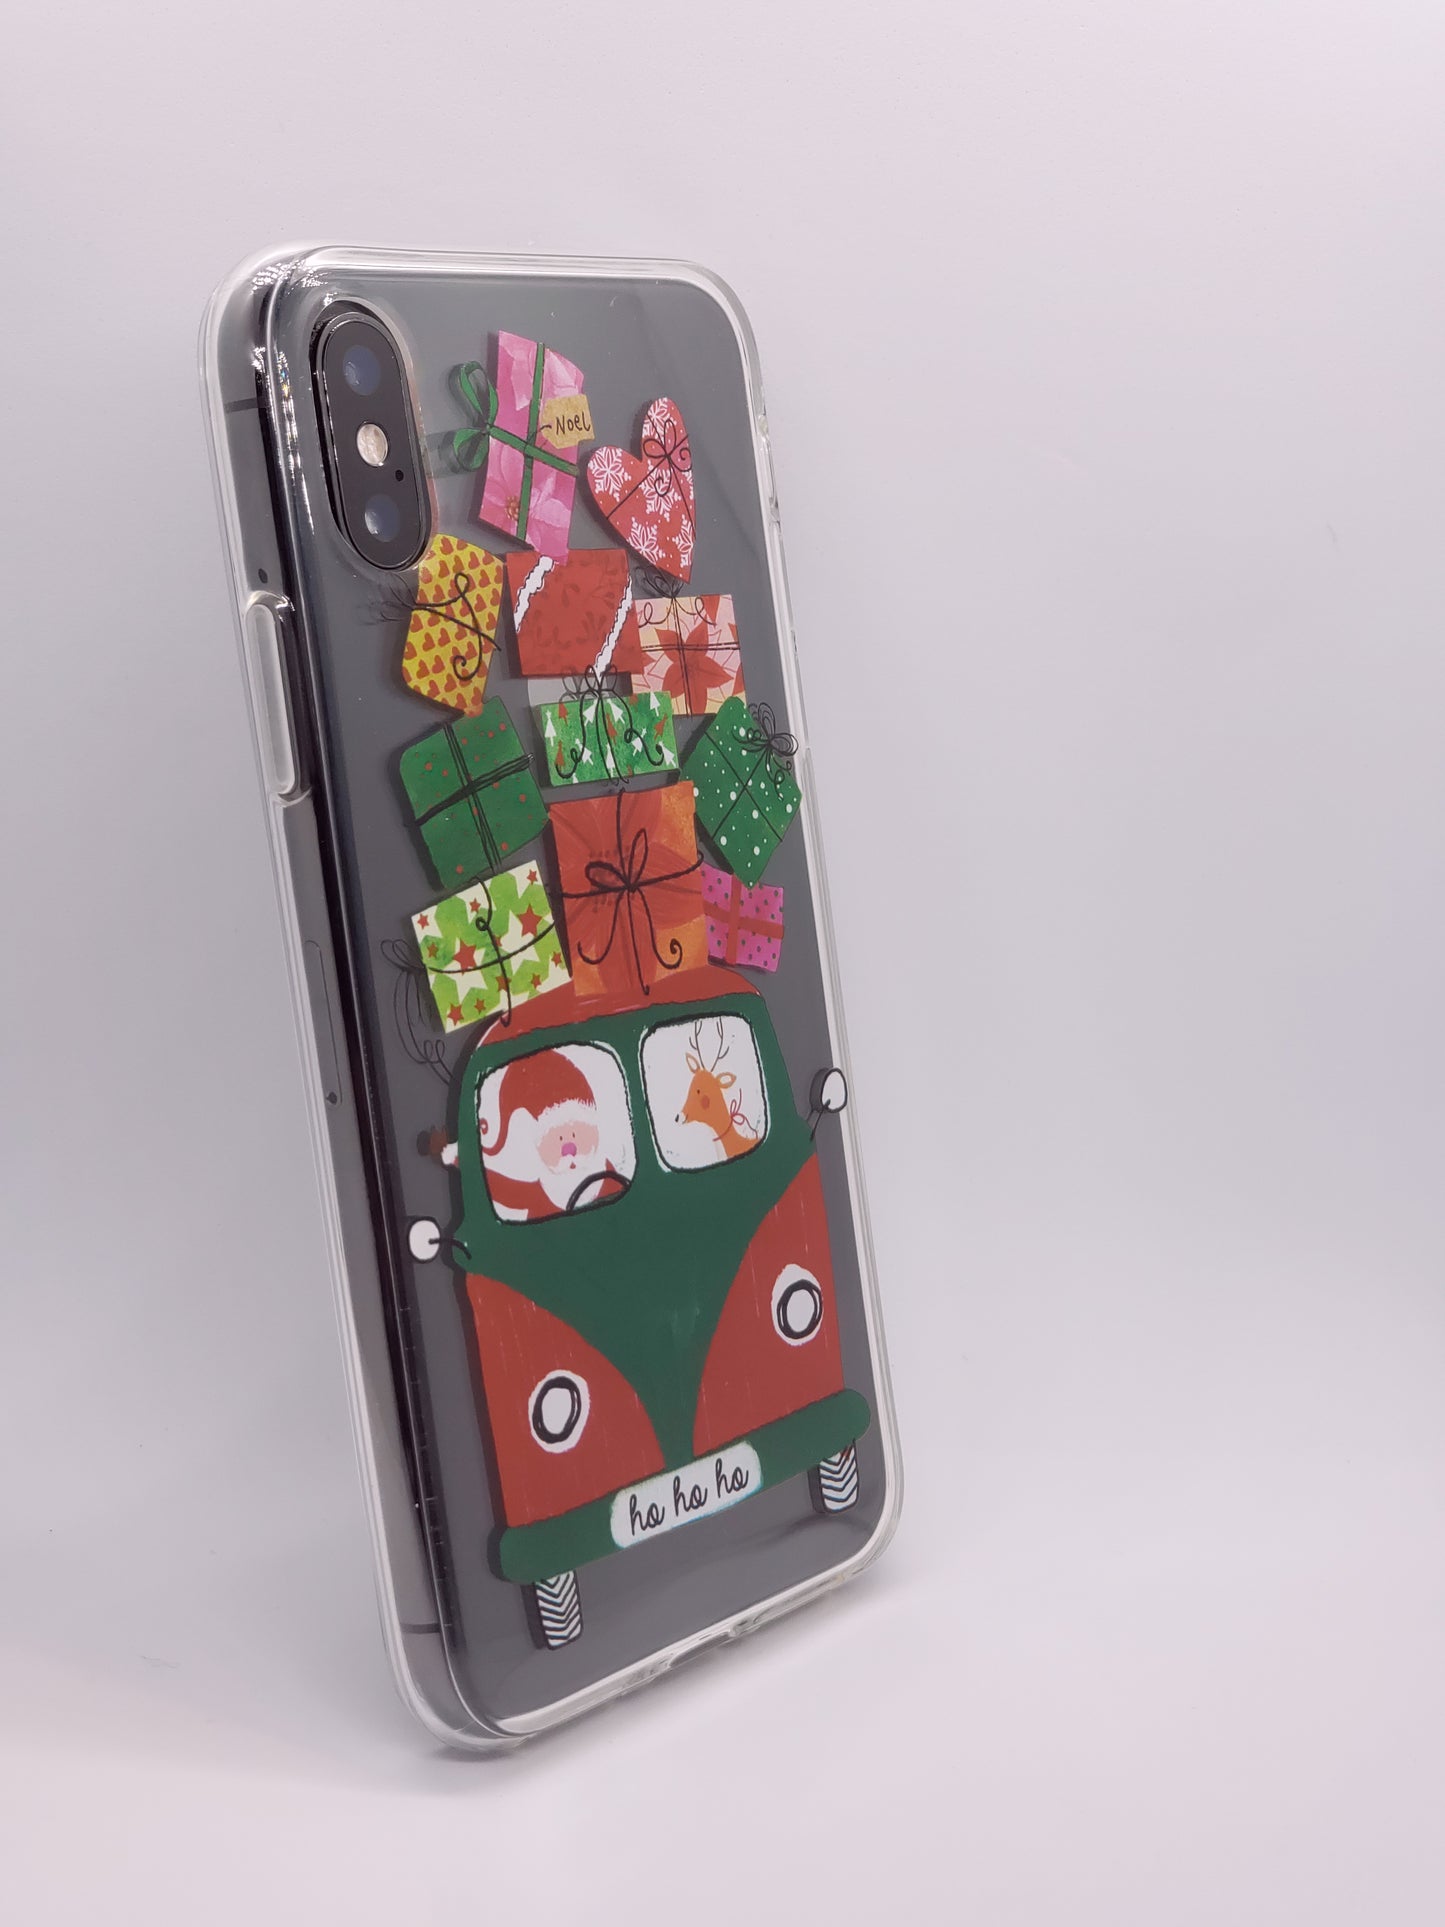 Cadeaux de Noël Transparent Clear iPhone Case